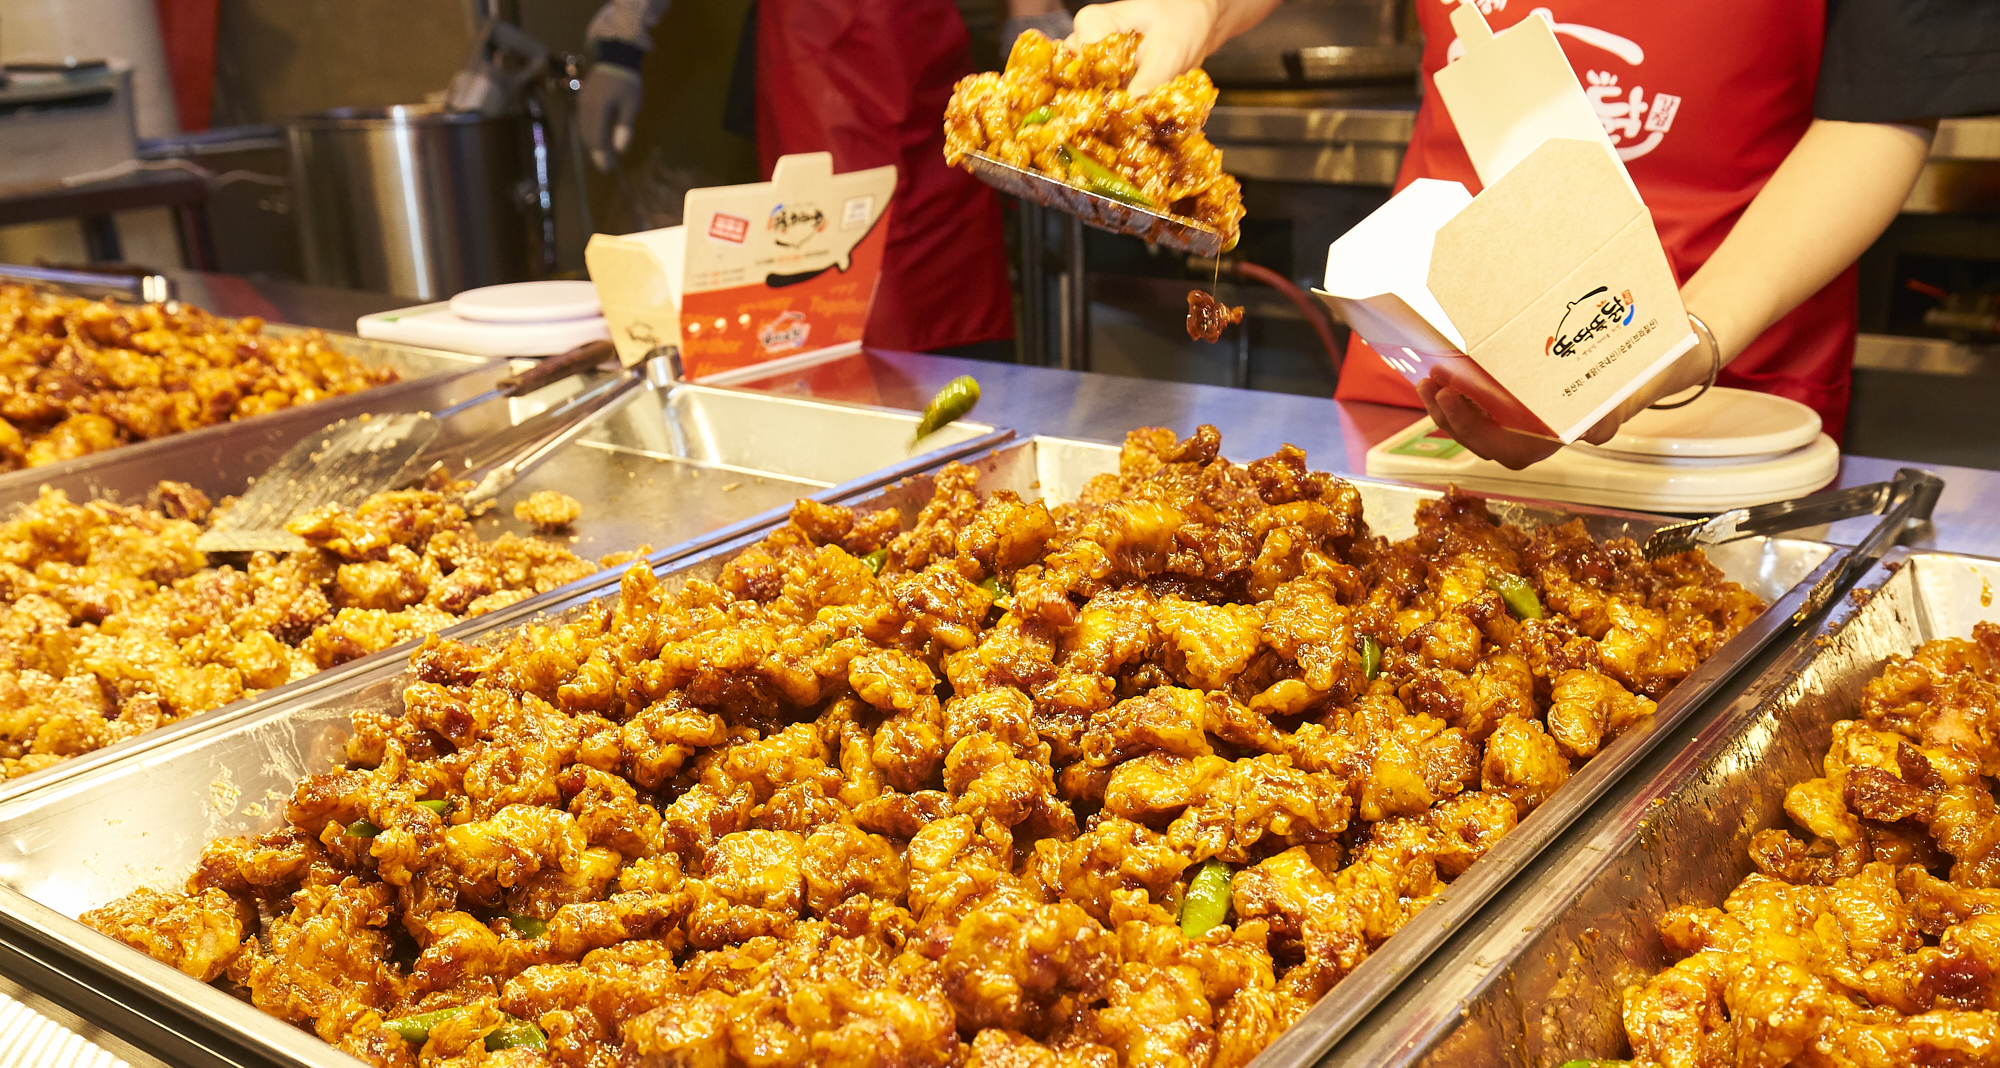  ‘뚝딱뚝닭 강정’은 ‘경기도 전통시장 명품점포’로 선정된 곳이다. 차별화 요소로 소스를 직접 제조해 사용하고 있다. 맛이 좋고 원산지는 브라질산 닭을 사용하고 있다.